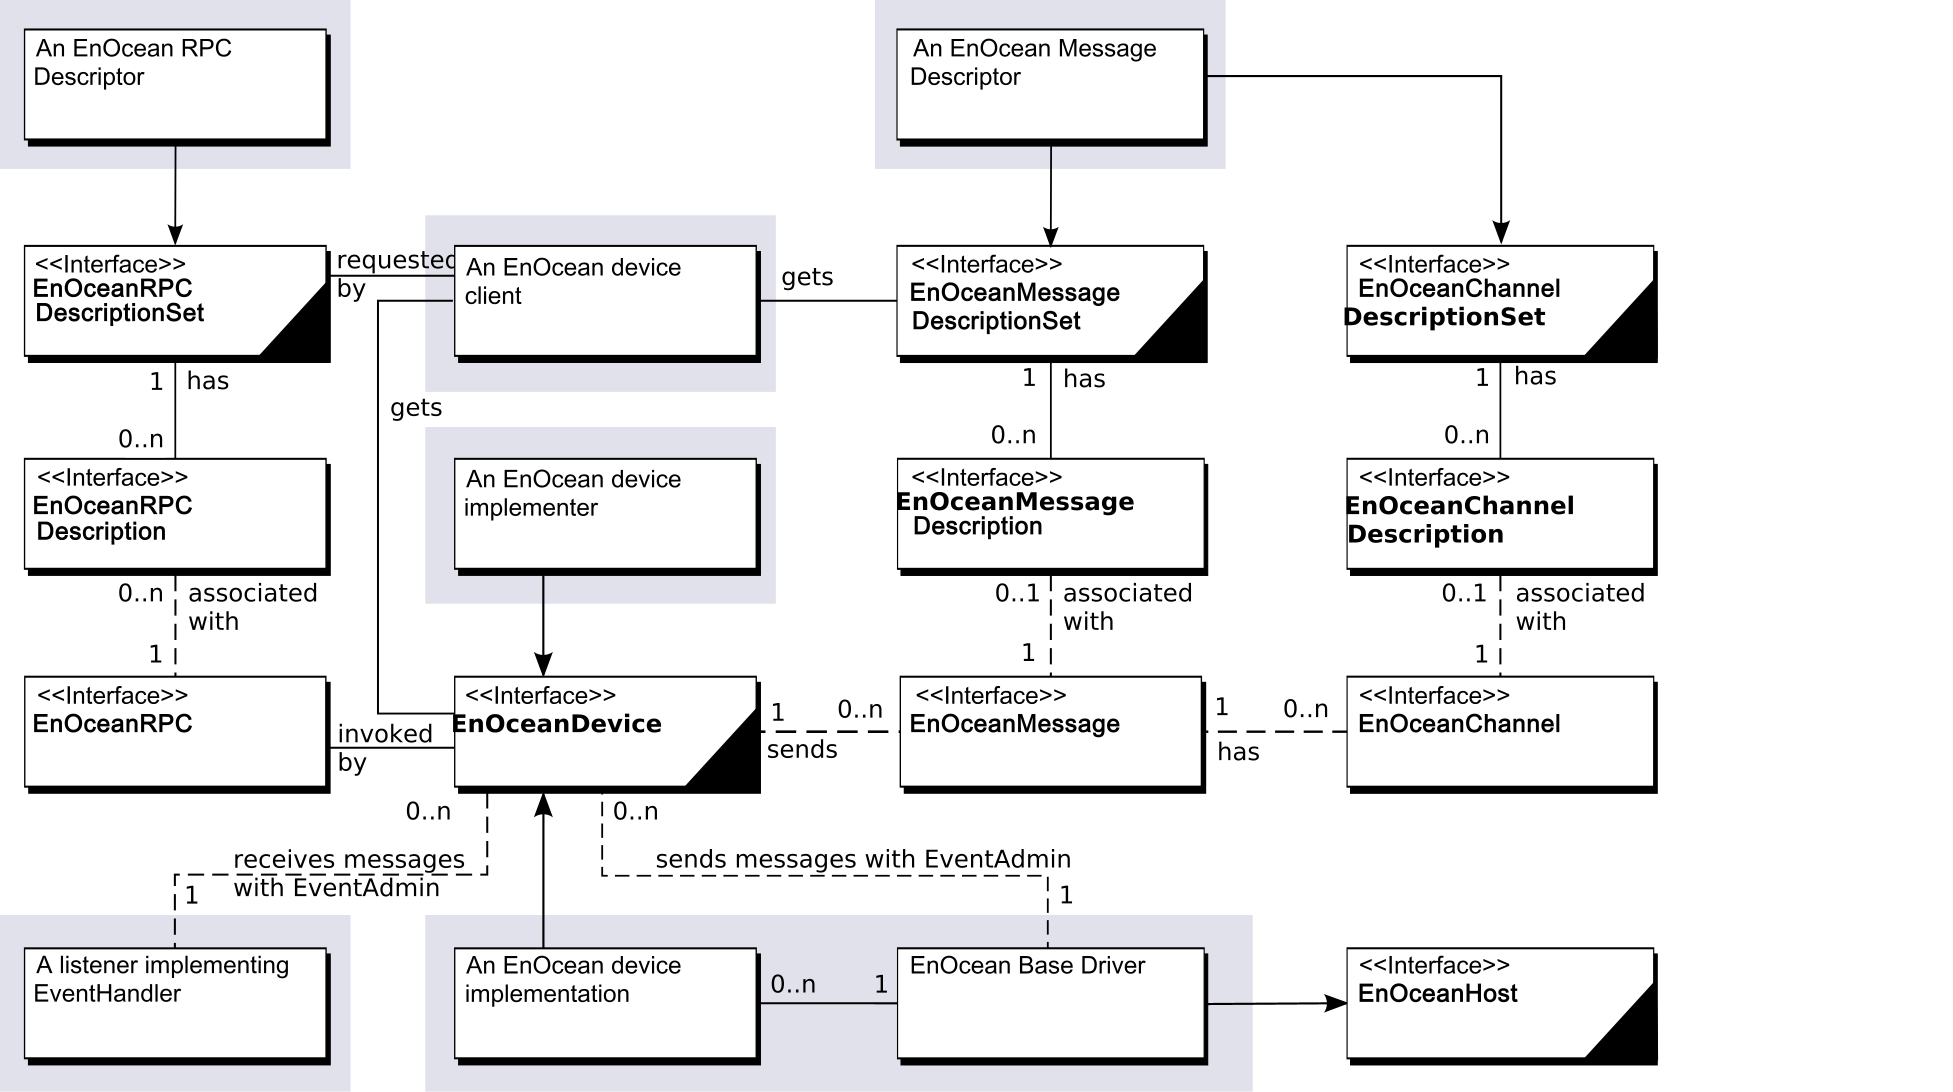 EnOcean Service Specification class diagram.